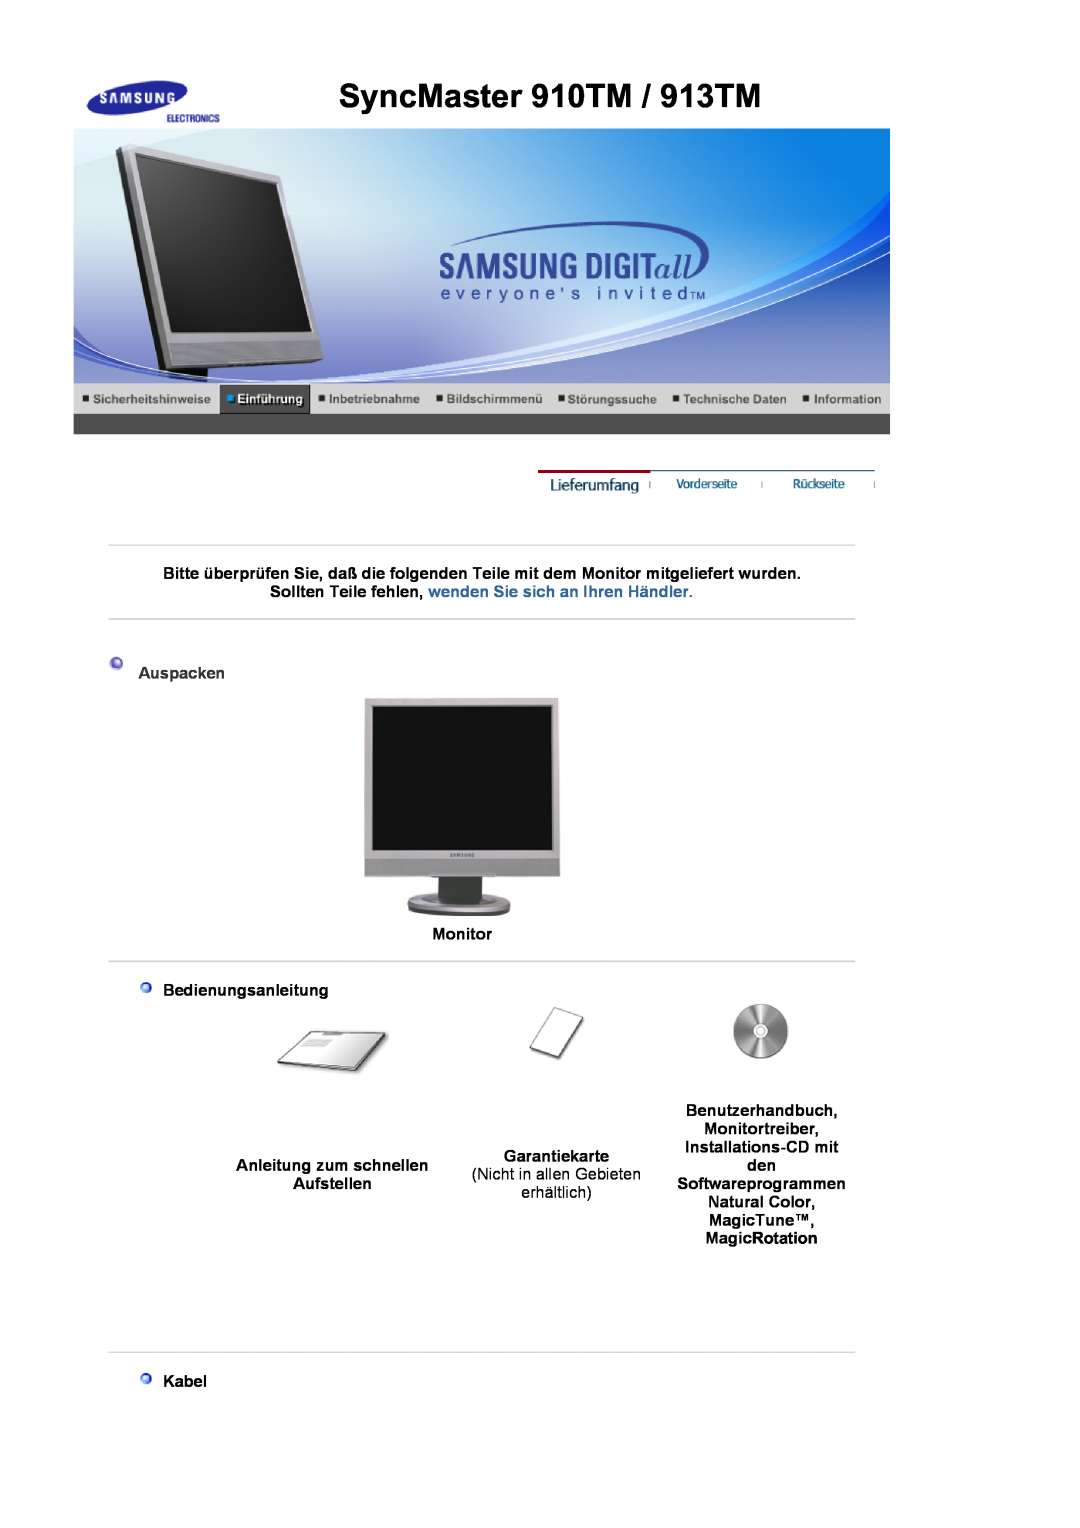 Samsung MJ17MSTSQ/EDC SyncMaster 910TM / 913TM, Sollten Teile fehlen, wenden Sie sich an Ihren Händler, Auspacken, Kabel 